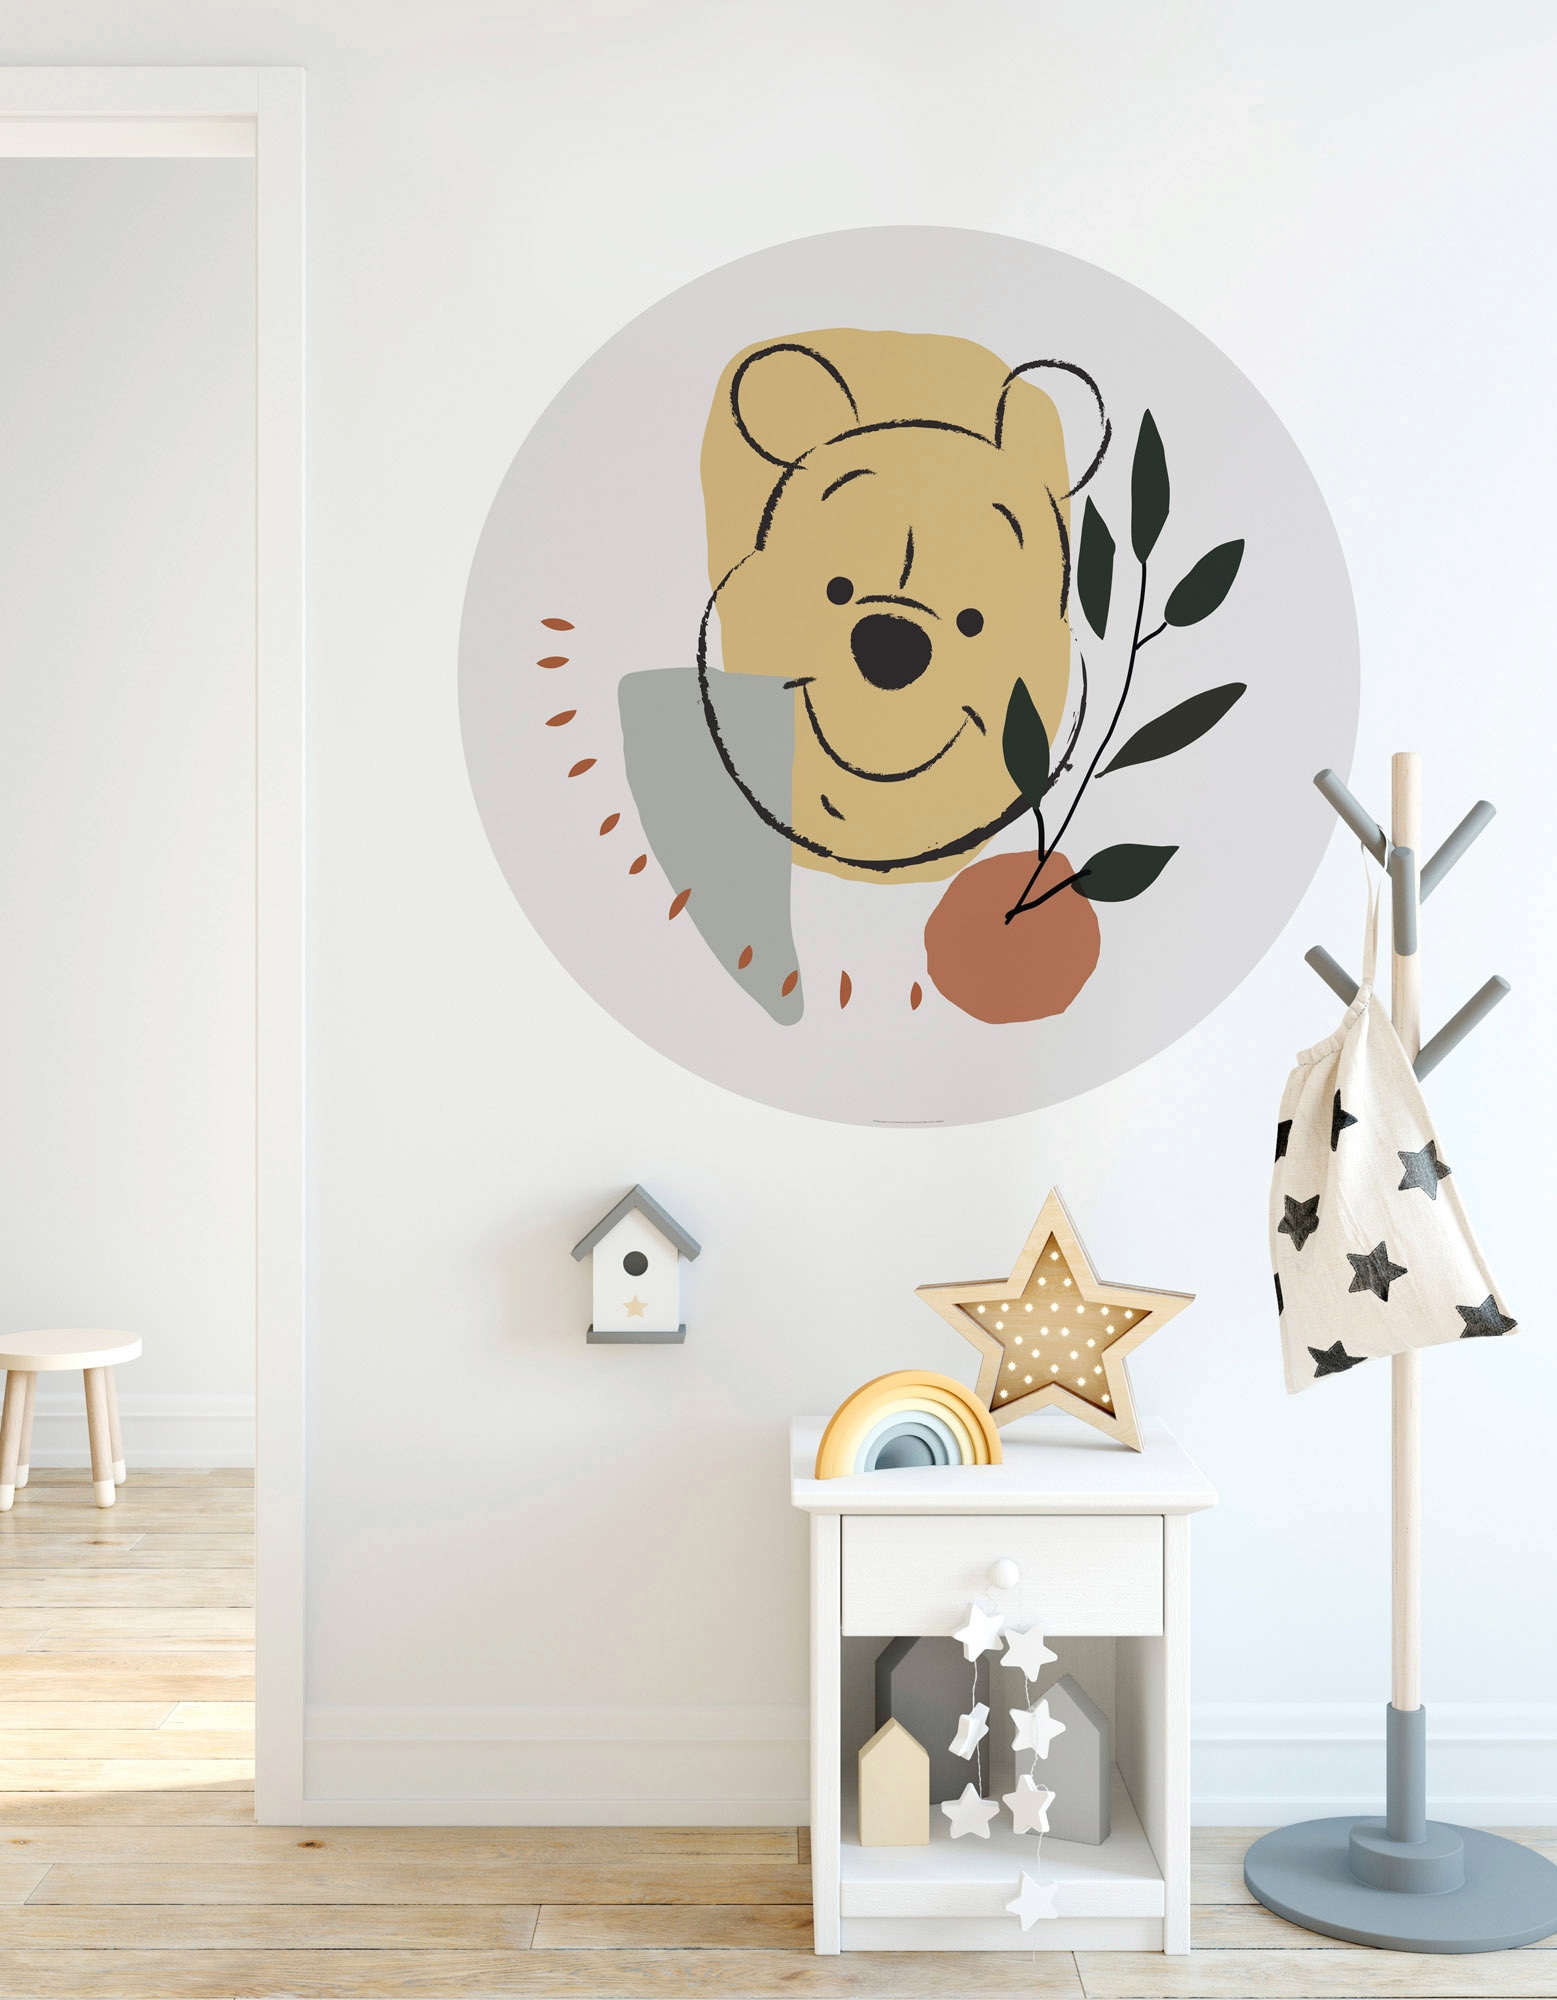 Komar Fototapete »Winnie Pooh Smile«, 125x125 cm (Breite x Höhe), rund und  selbstklebend online bestellen bei OTTO | Fototapeten